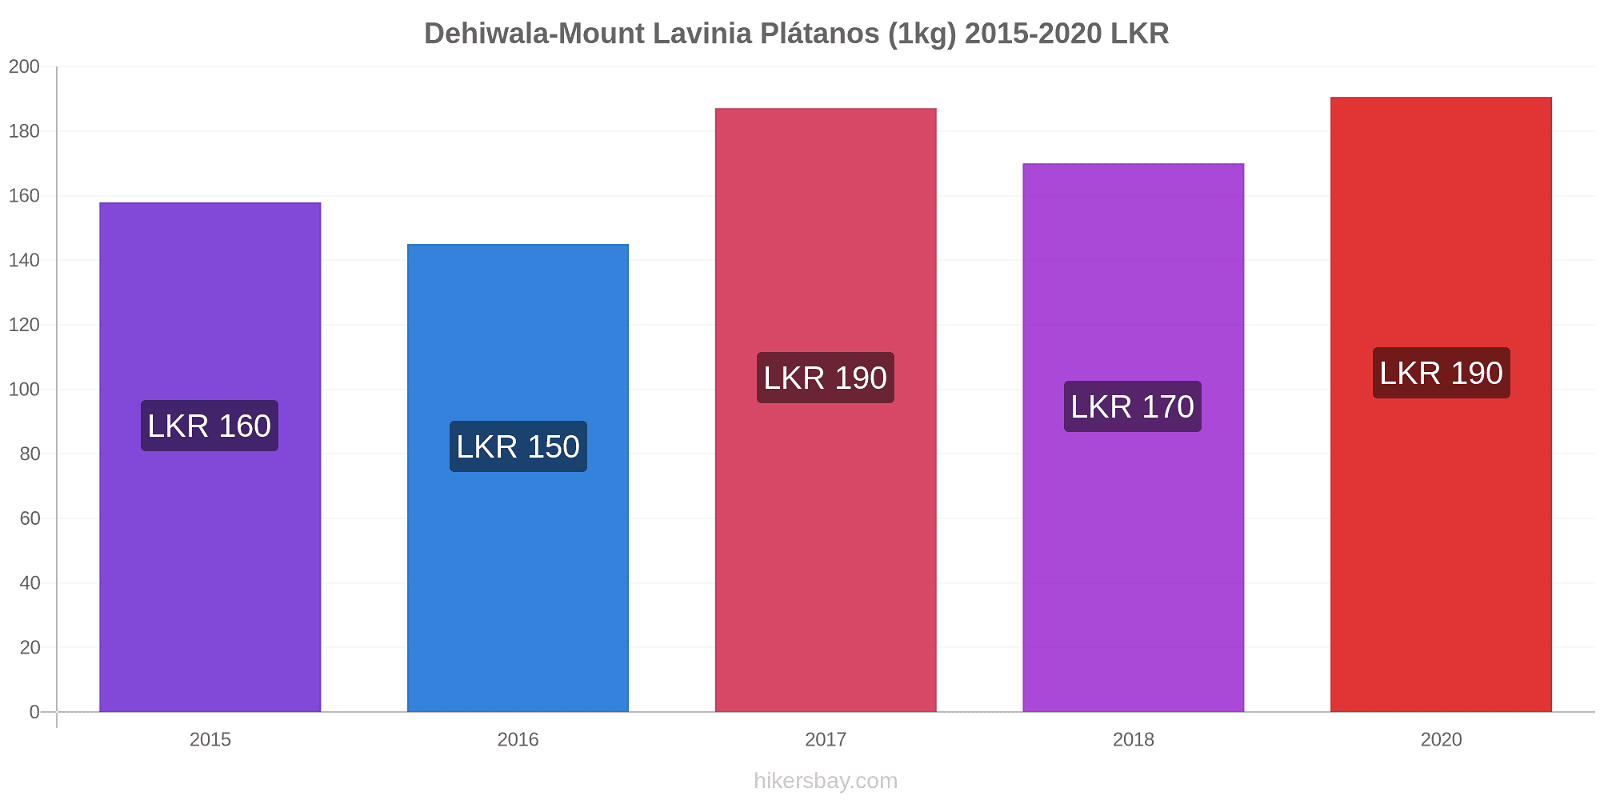 Dehiwala-Mount Lavinia cambios de precios Plátano (1kg) hikersbay.com